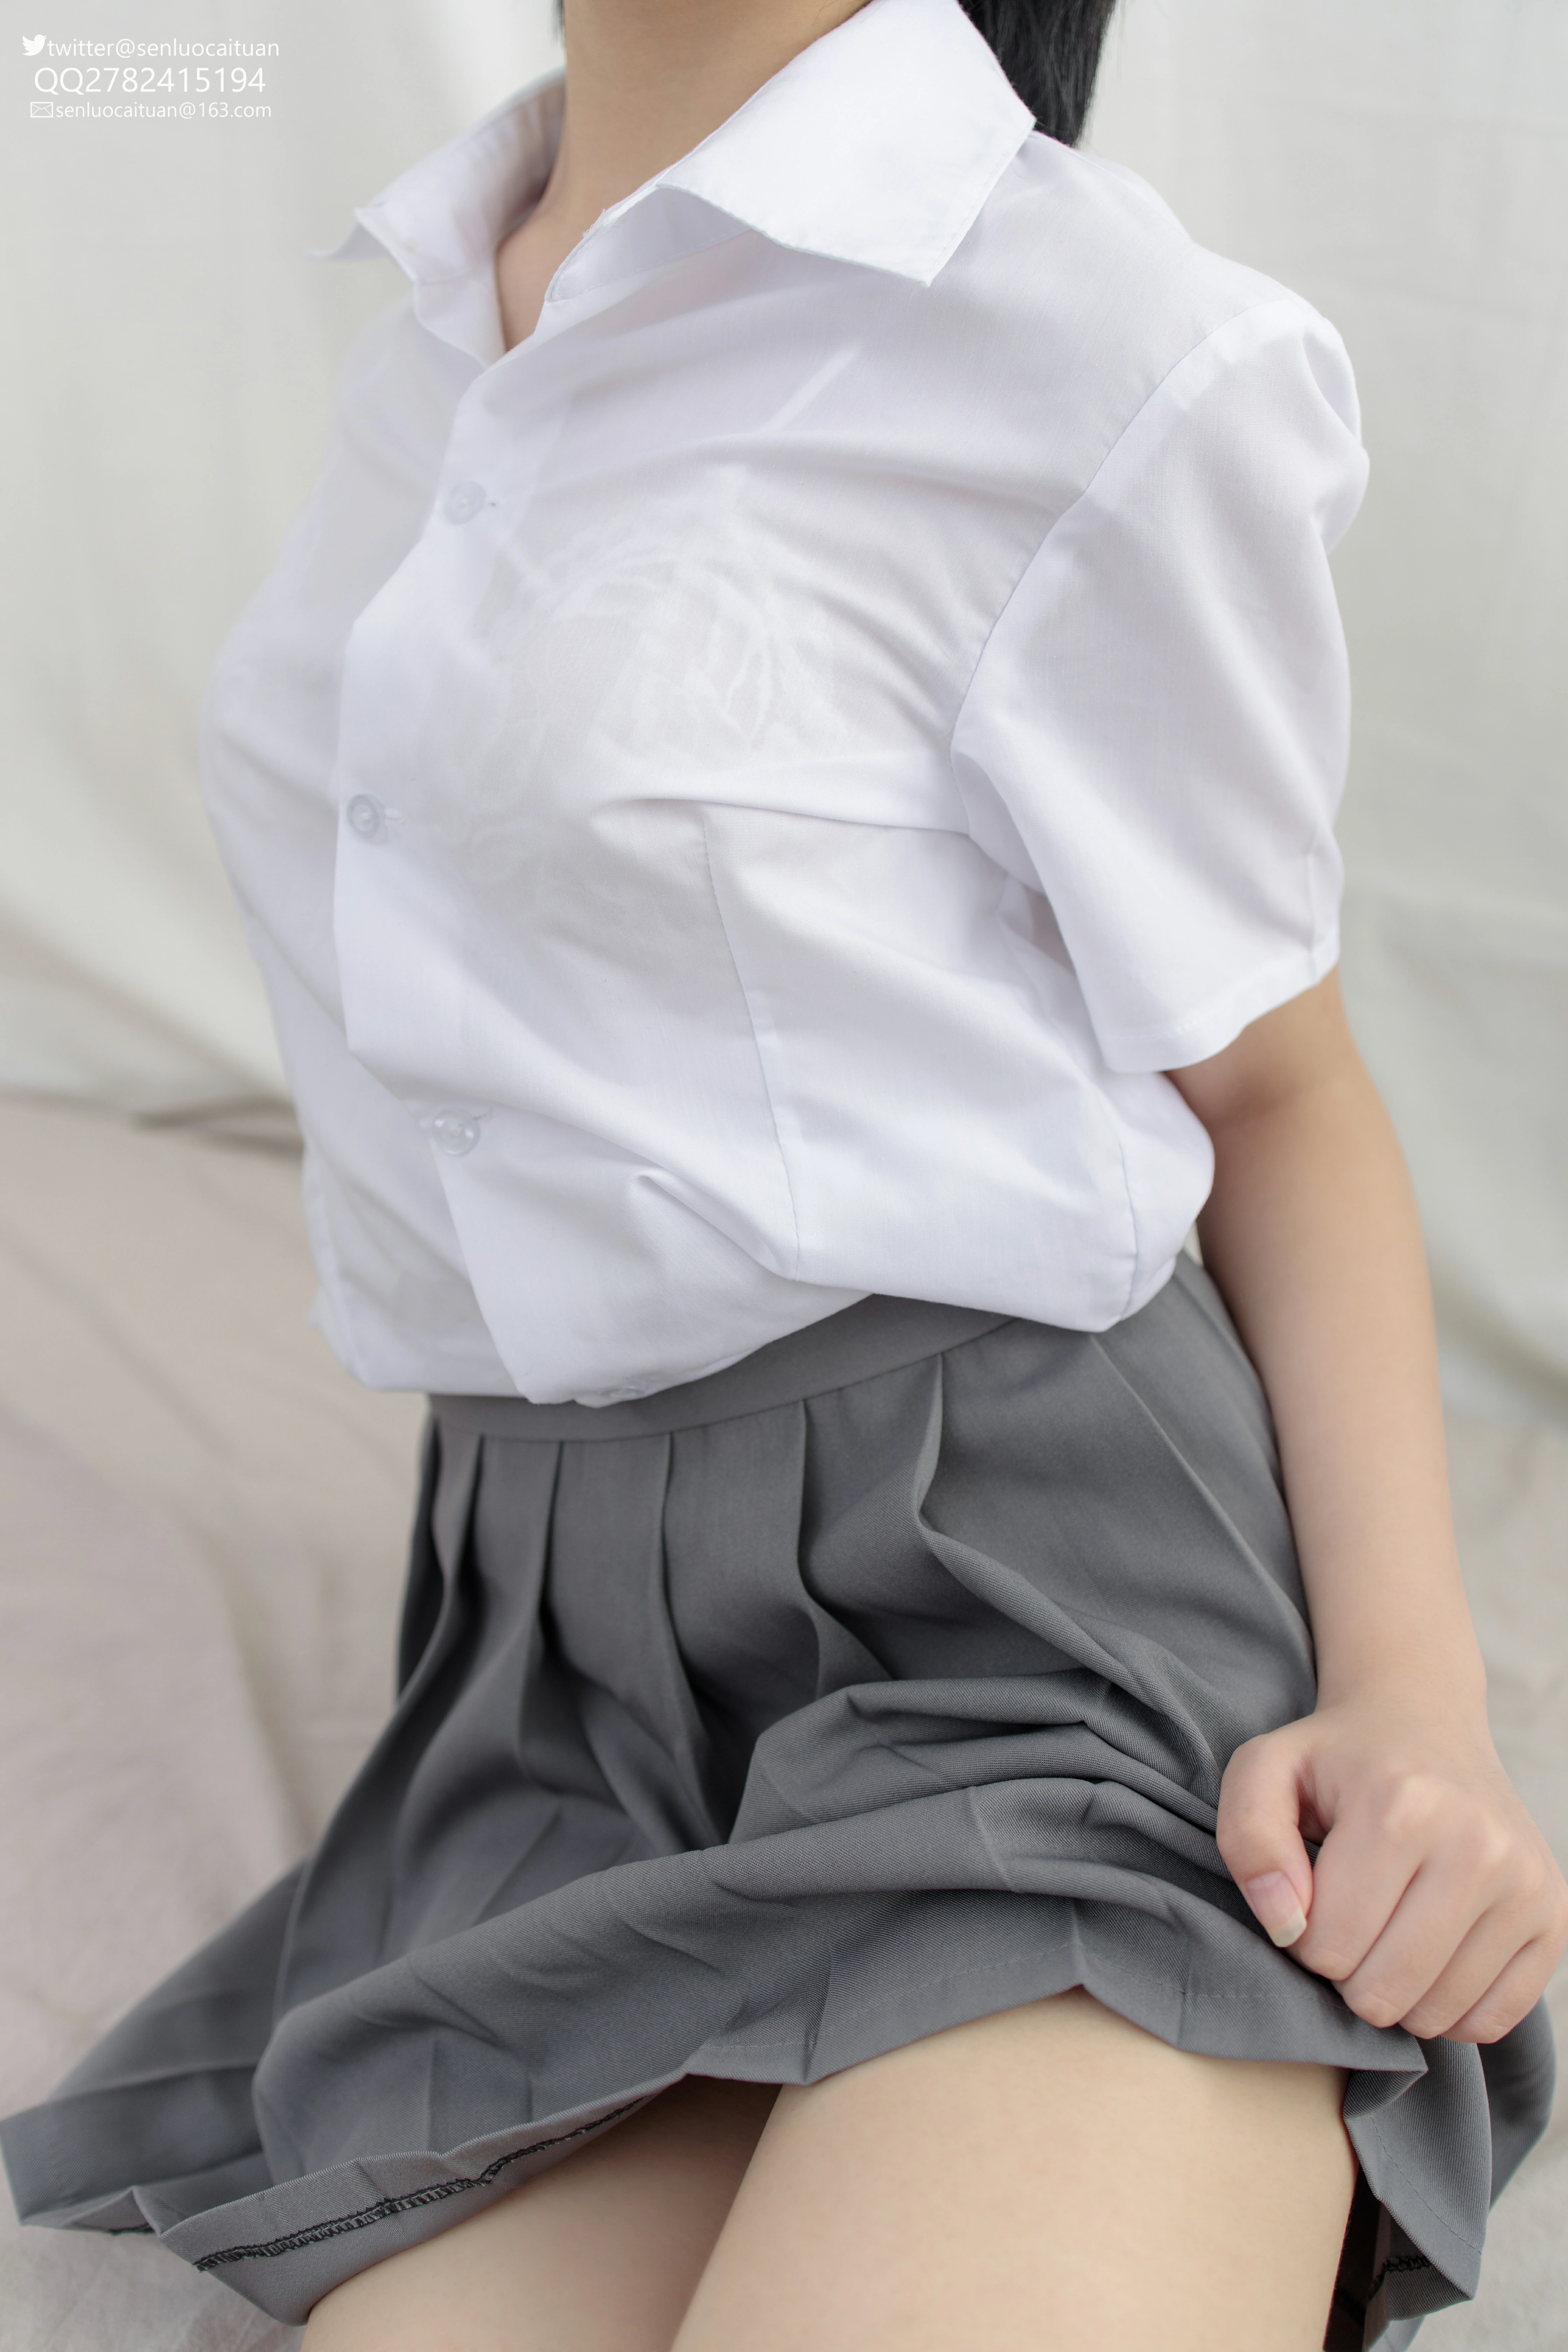 [森萝财团]JKFUN-GG-03 希晨《JK制服》白色衬衫与灰色短裙加白色丝袜美腿性感私房写真集,